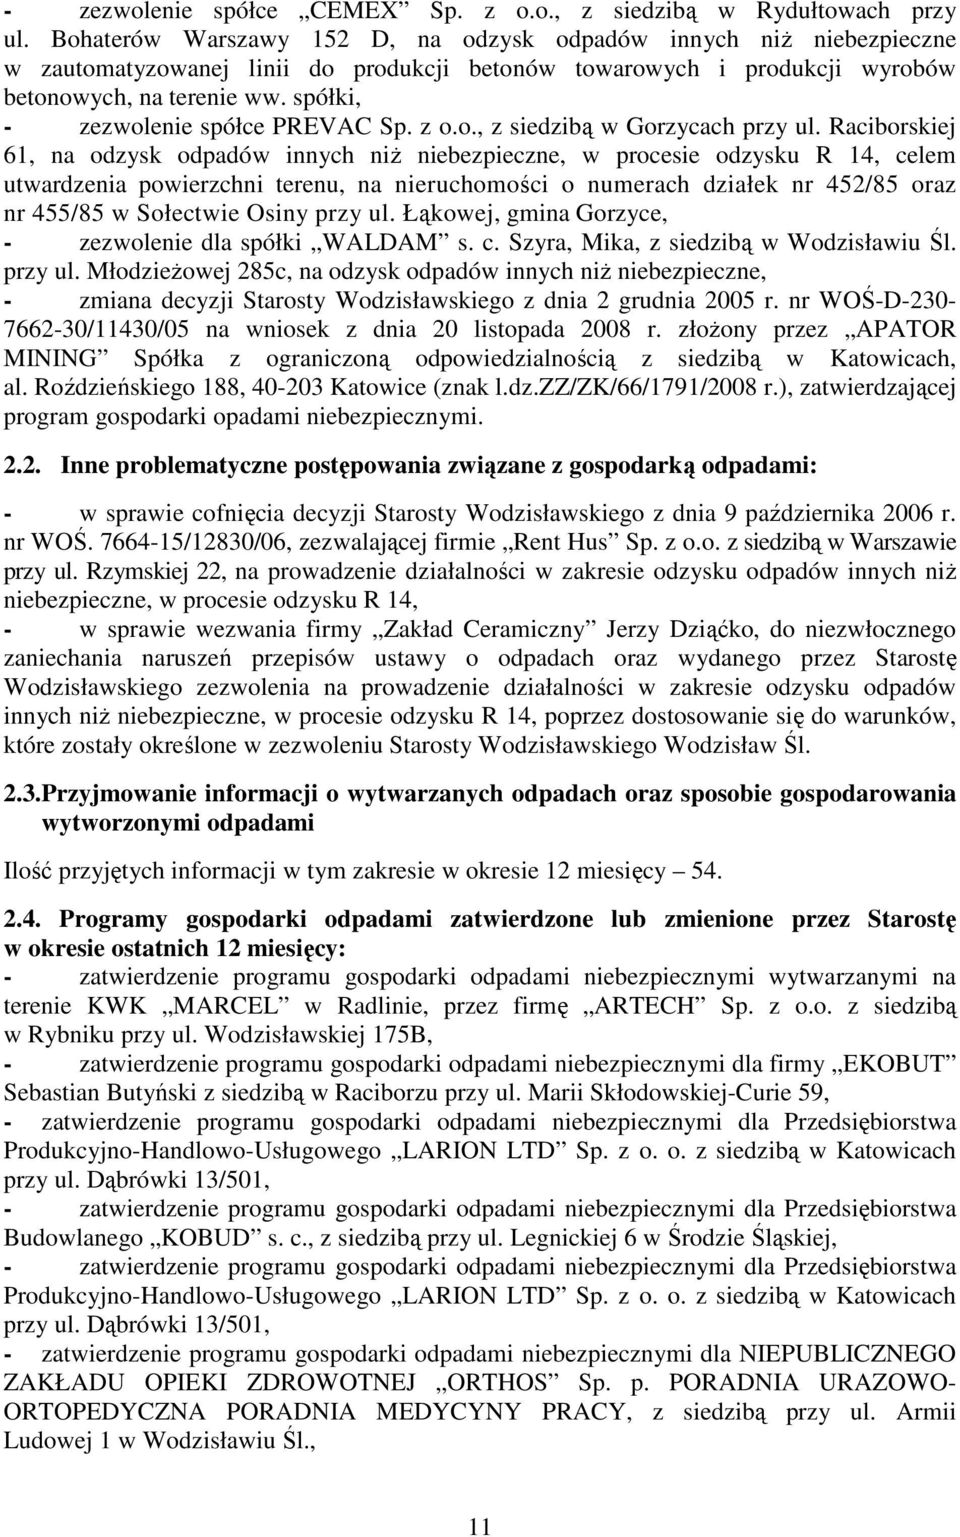 spółki, - zezwolenie spółce PREVAC Sp. z o.o., z siedzibą w Gorzycach przy ul.